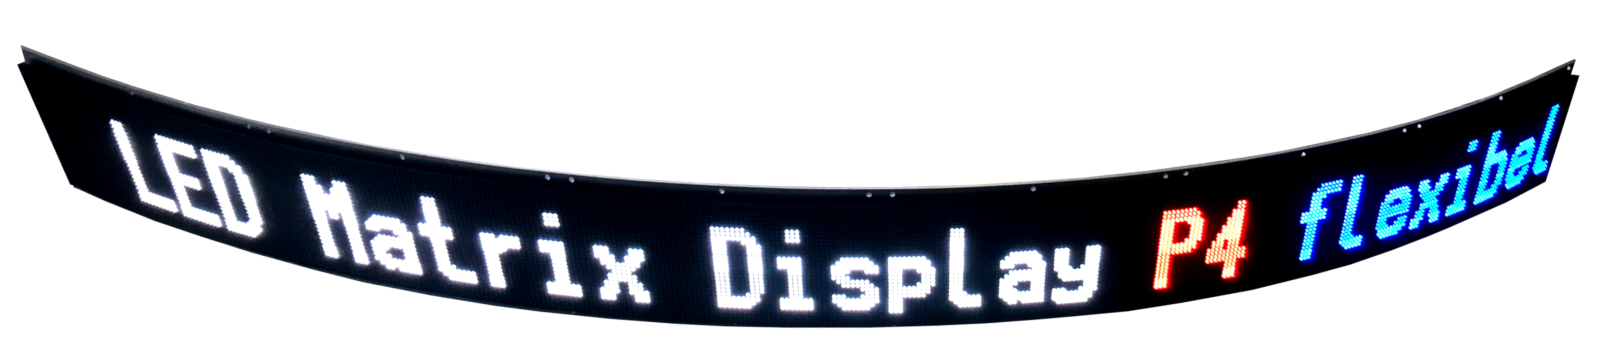 Flexible LED matrix display, 128 x 1.536 mm, pixel pitch 4 mm, indoor, RGB